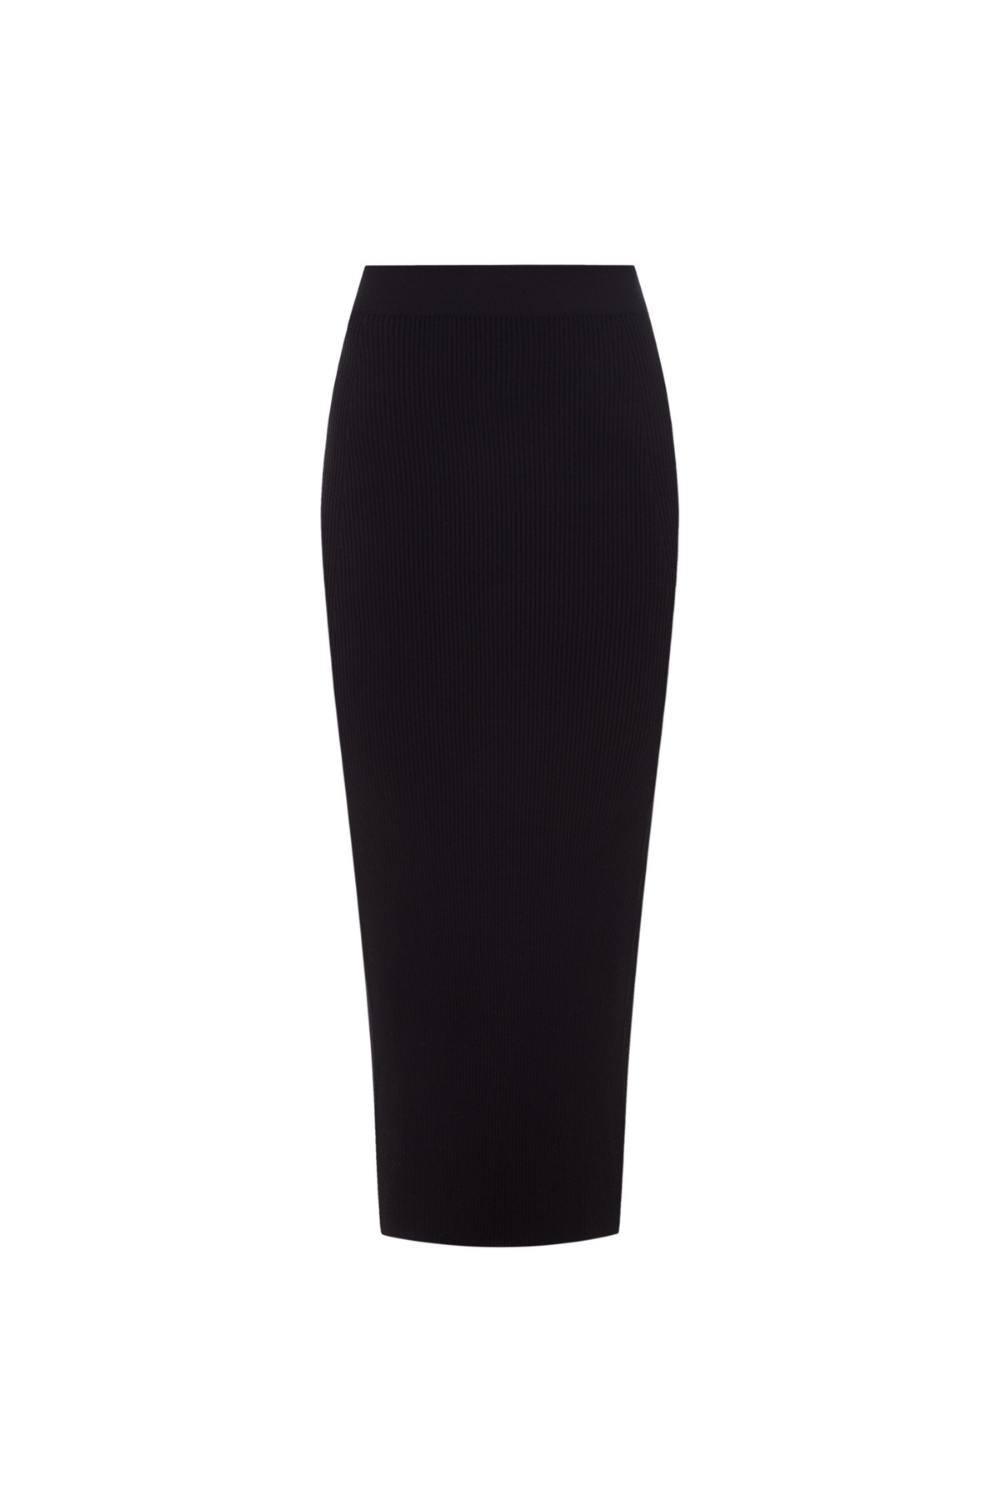 Black skirt (0202)